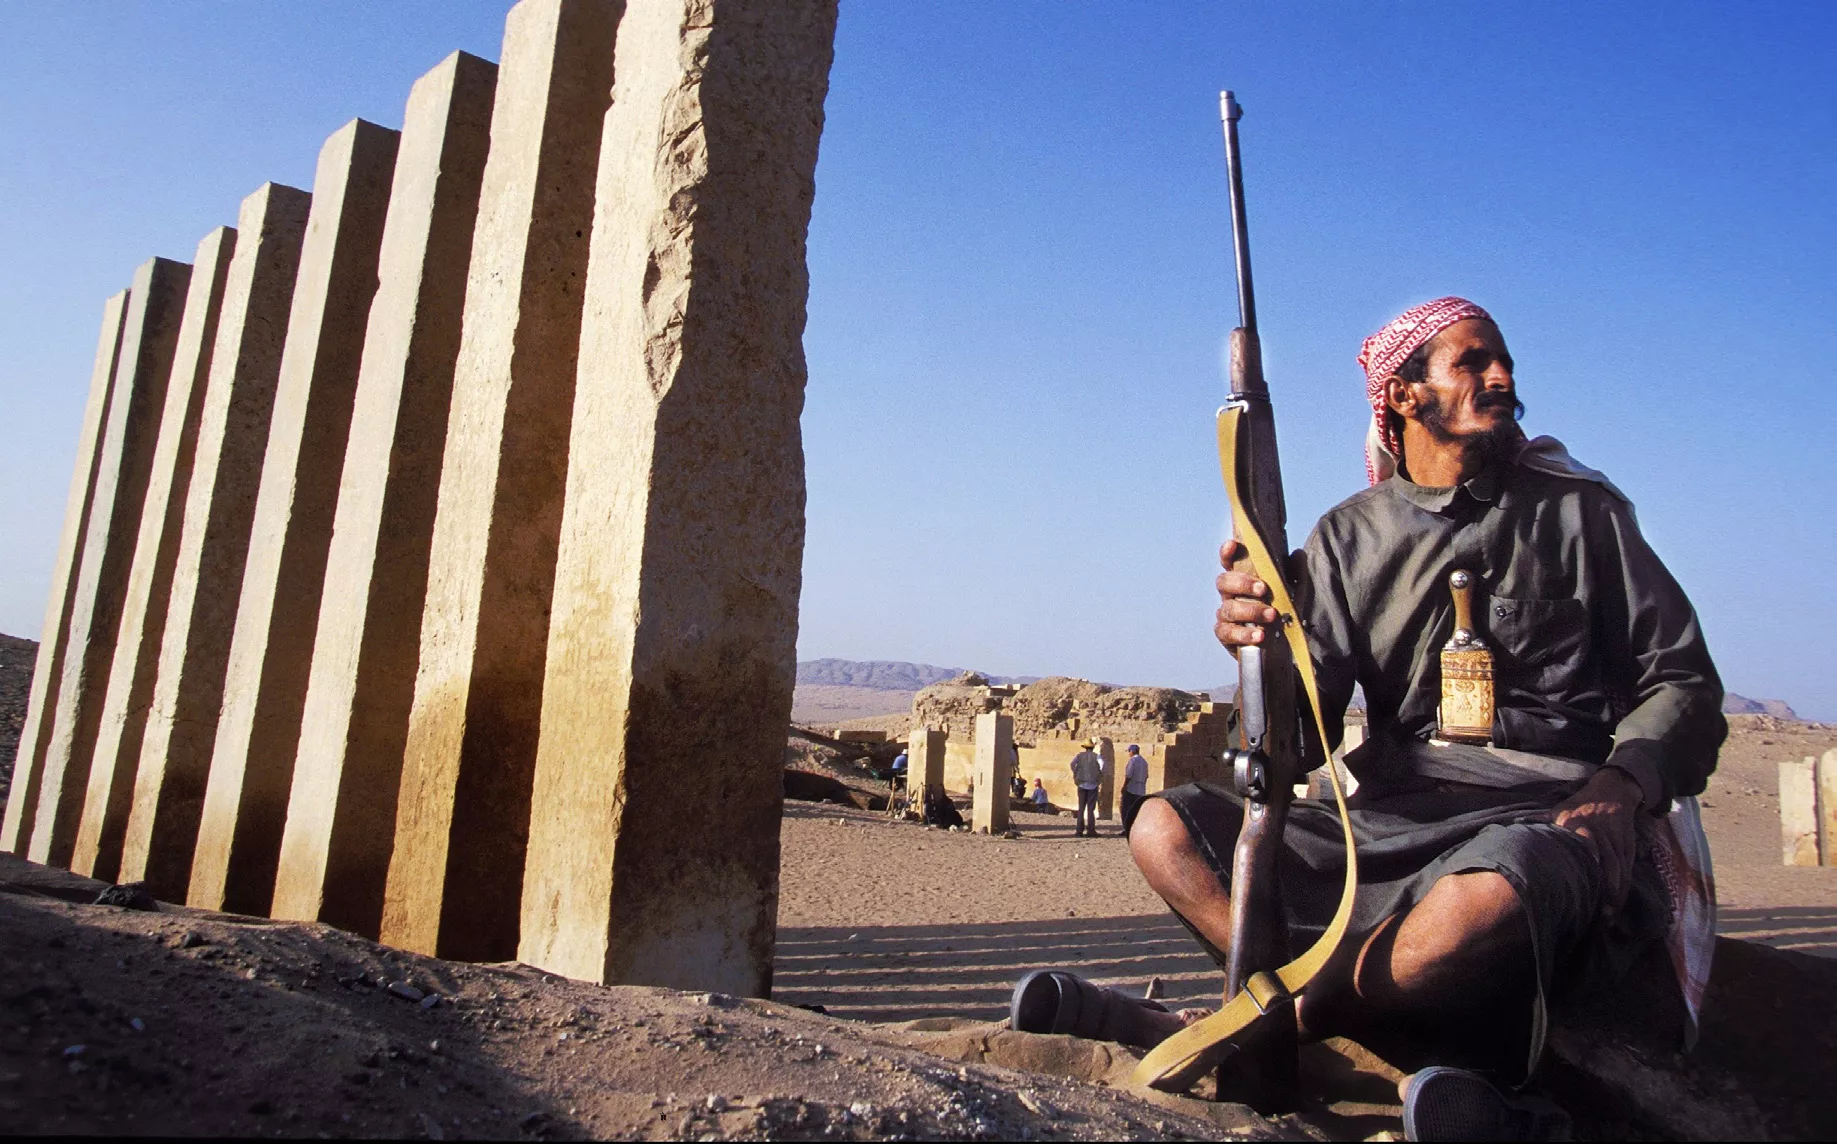 Molts jaciments arqueològics han quedat exposats a conflictes: veure-hi milicians armats és habitual, com en aquest de Marib, el Iemen